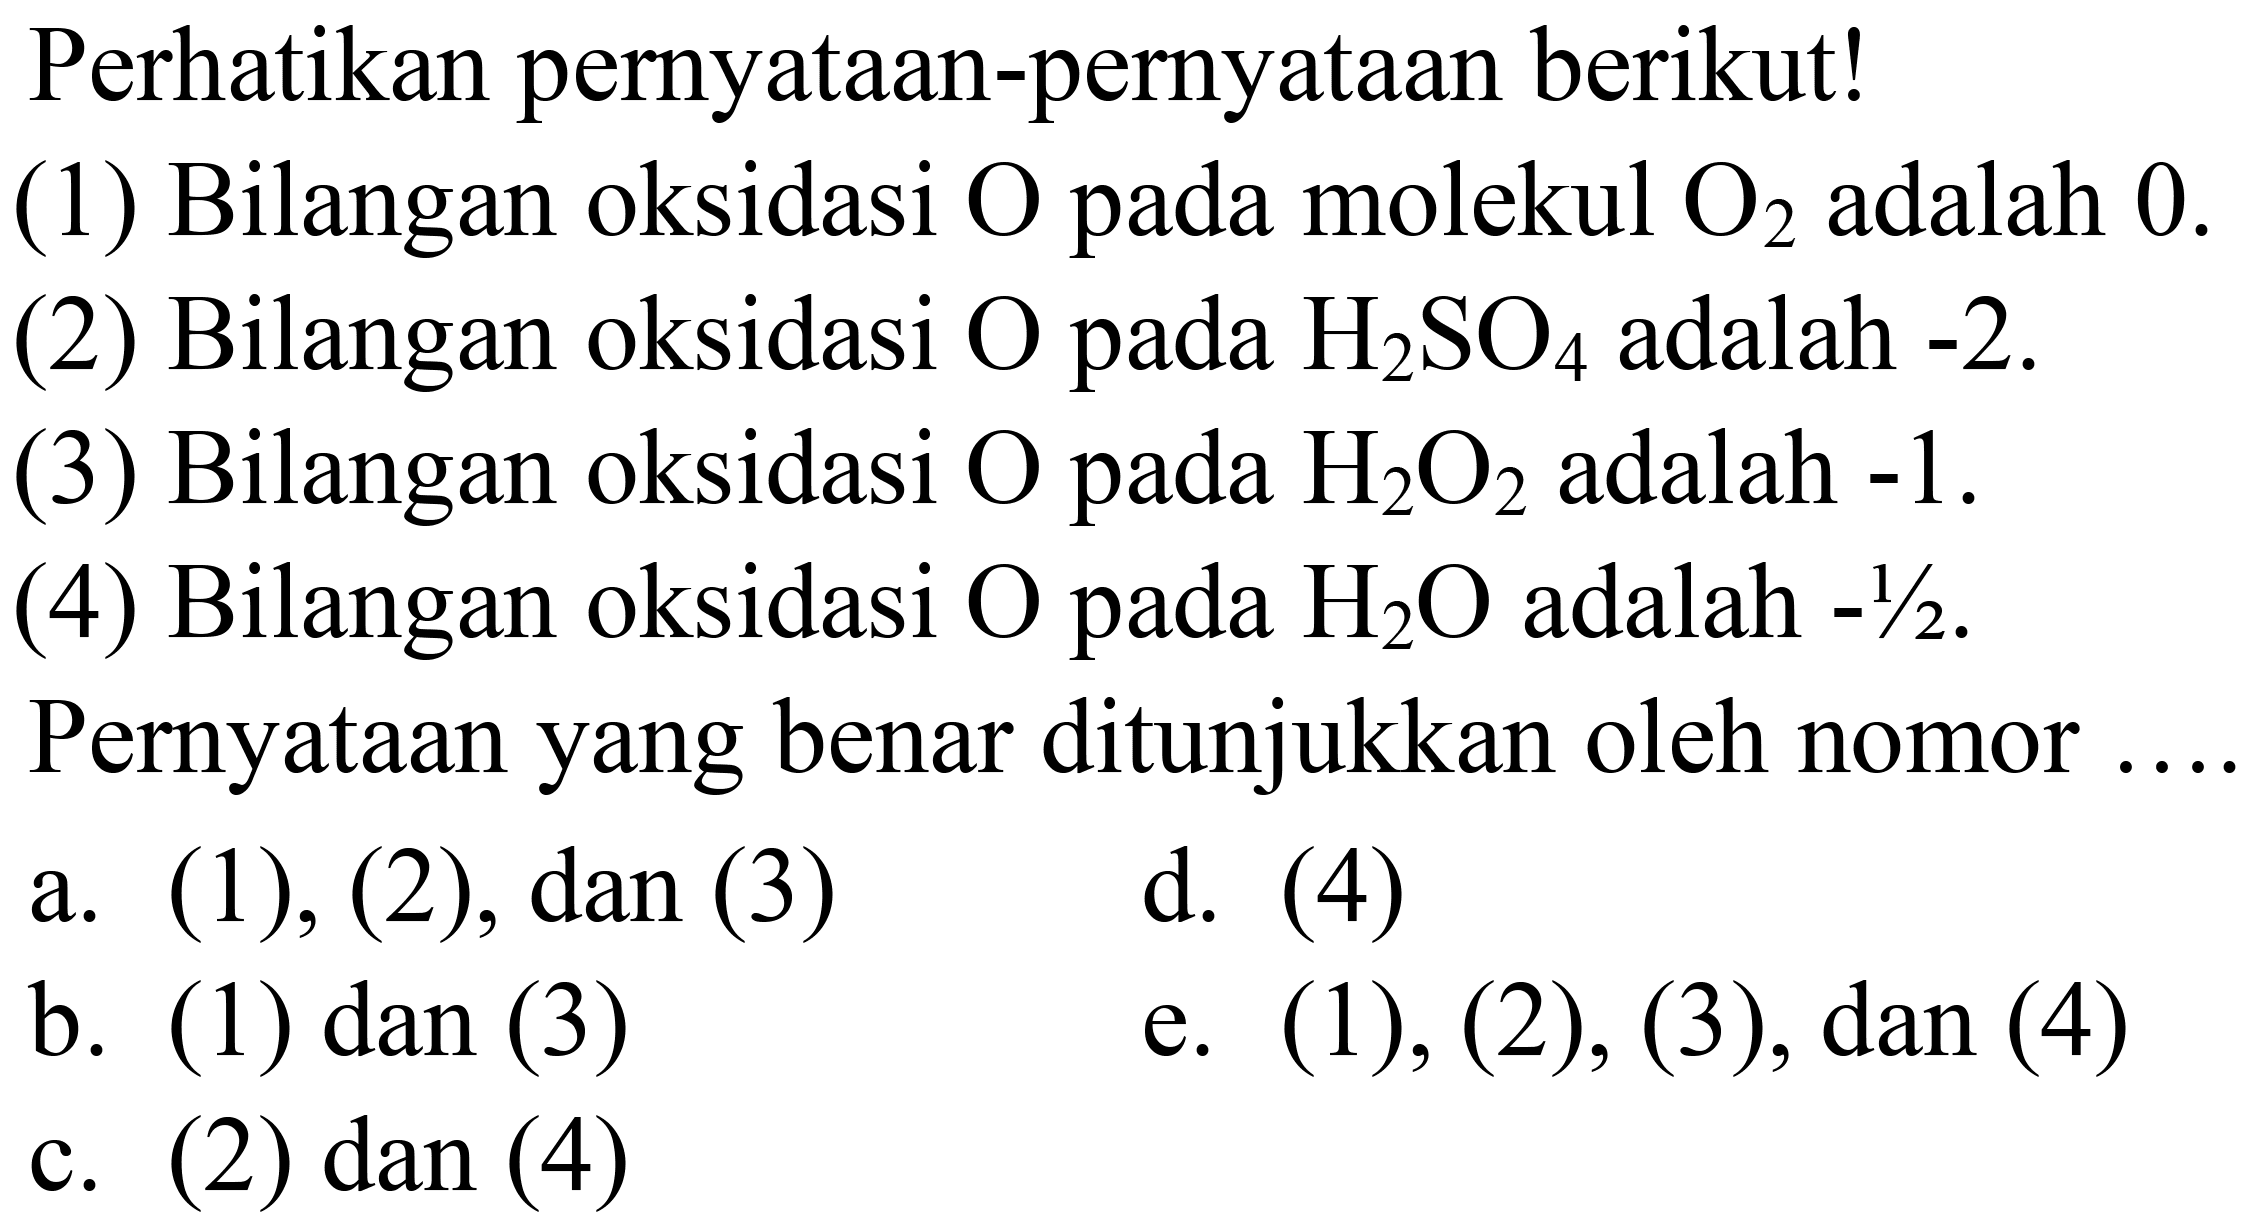 Perhatikan pernyataan-pernyataan berikut!
(1) Bilangan oksidasi  O  pada molekul  O_(2)  adalah 0 .
(2) Bilangan oksidasi  O  pada  H_(2) SO_(4)  adalah  -2 .
(3) Bilangan oksidasi  O  pada  H_(2) O_(2)  adalah  -1 .
(4) Bilangan oksidasi  O  pada  H_(2) O  adalah  -1 / 2 .
Pernyataan yang benar ditunjukkan oleh nomor
a. (1), (2), dan (3)
d. (4)
b. (1) dan (3)
e.  (1),(2),(3), dan(4) 
c. (2) dan (4)